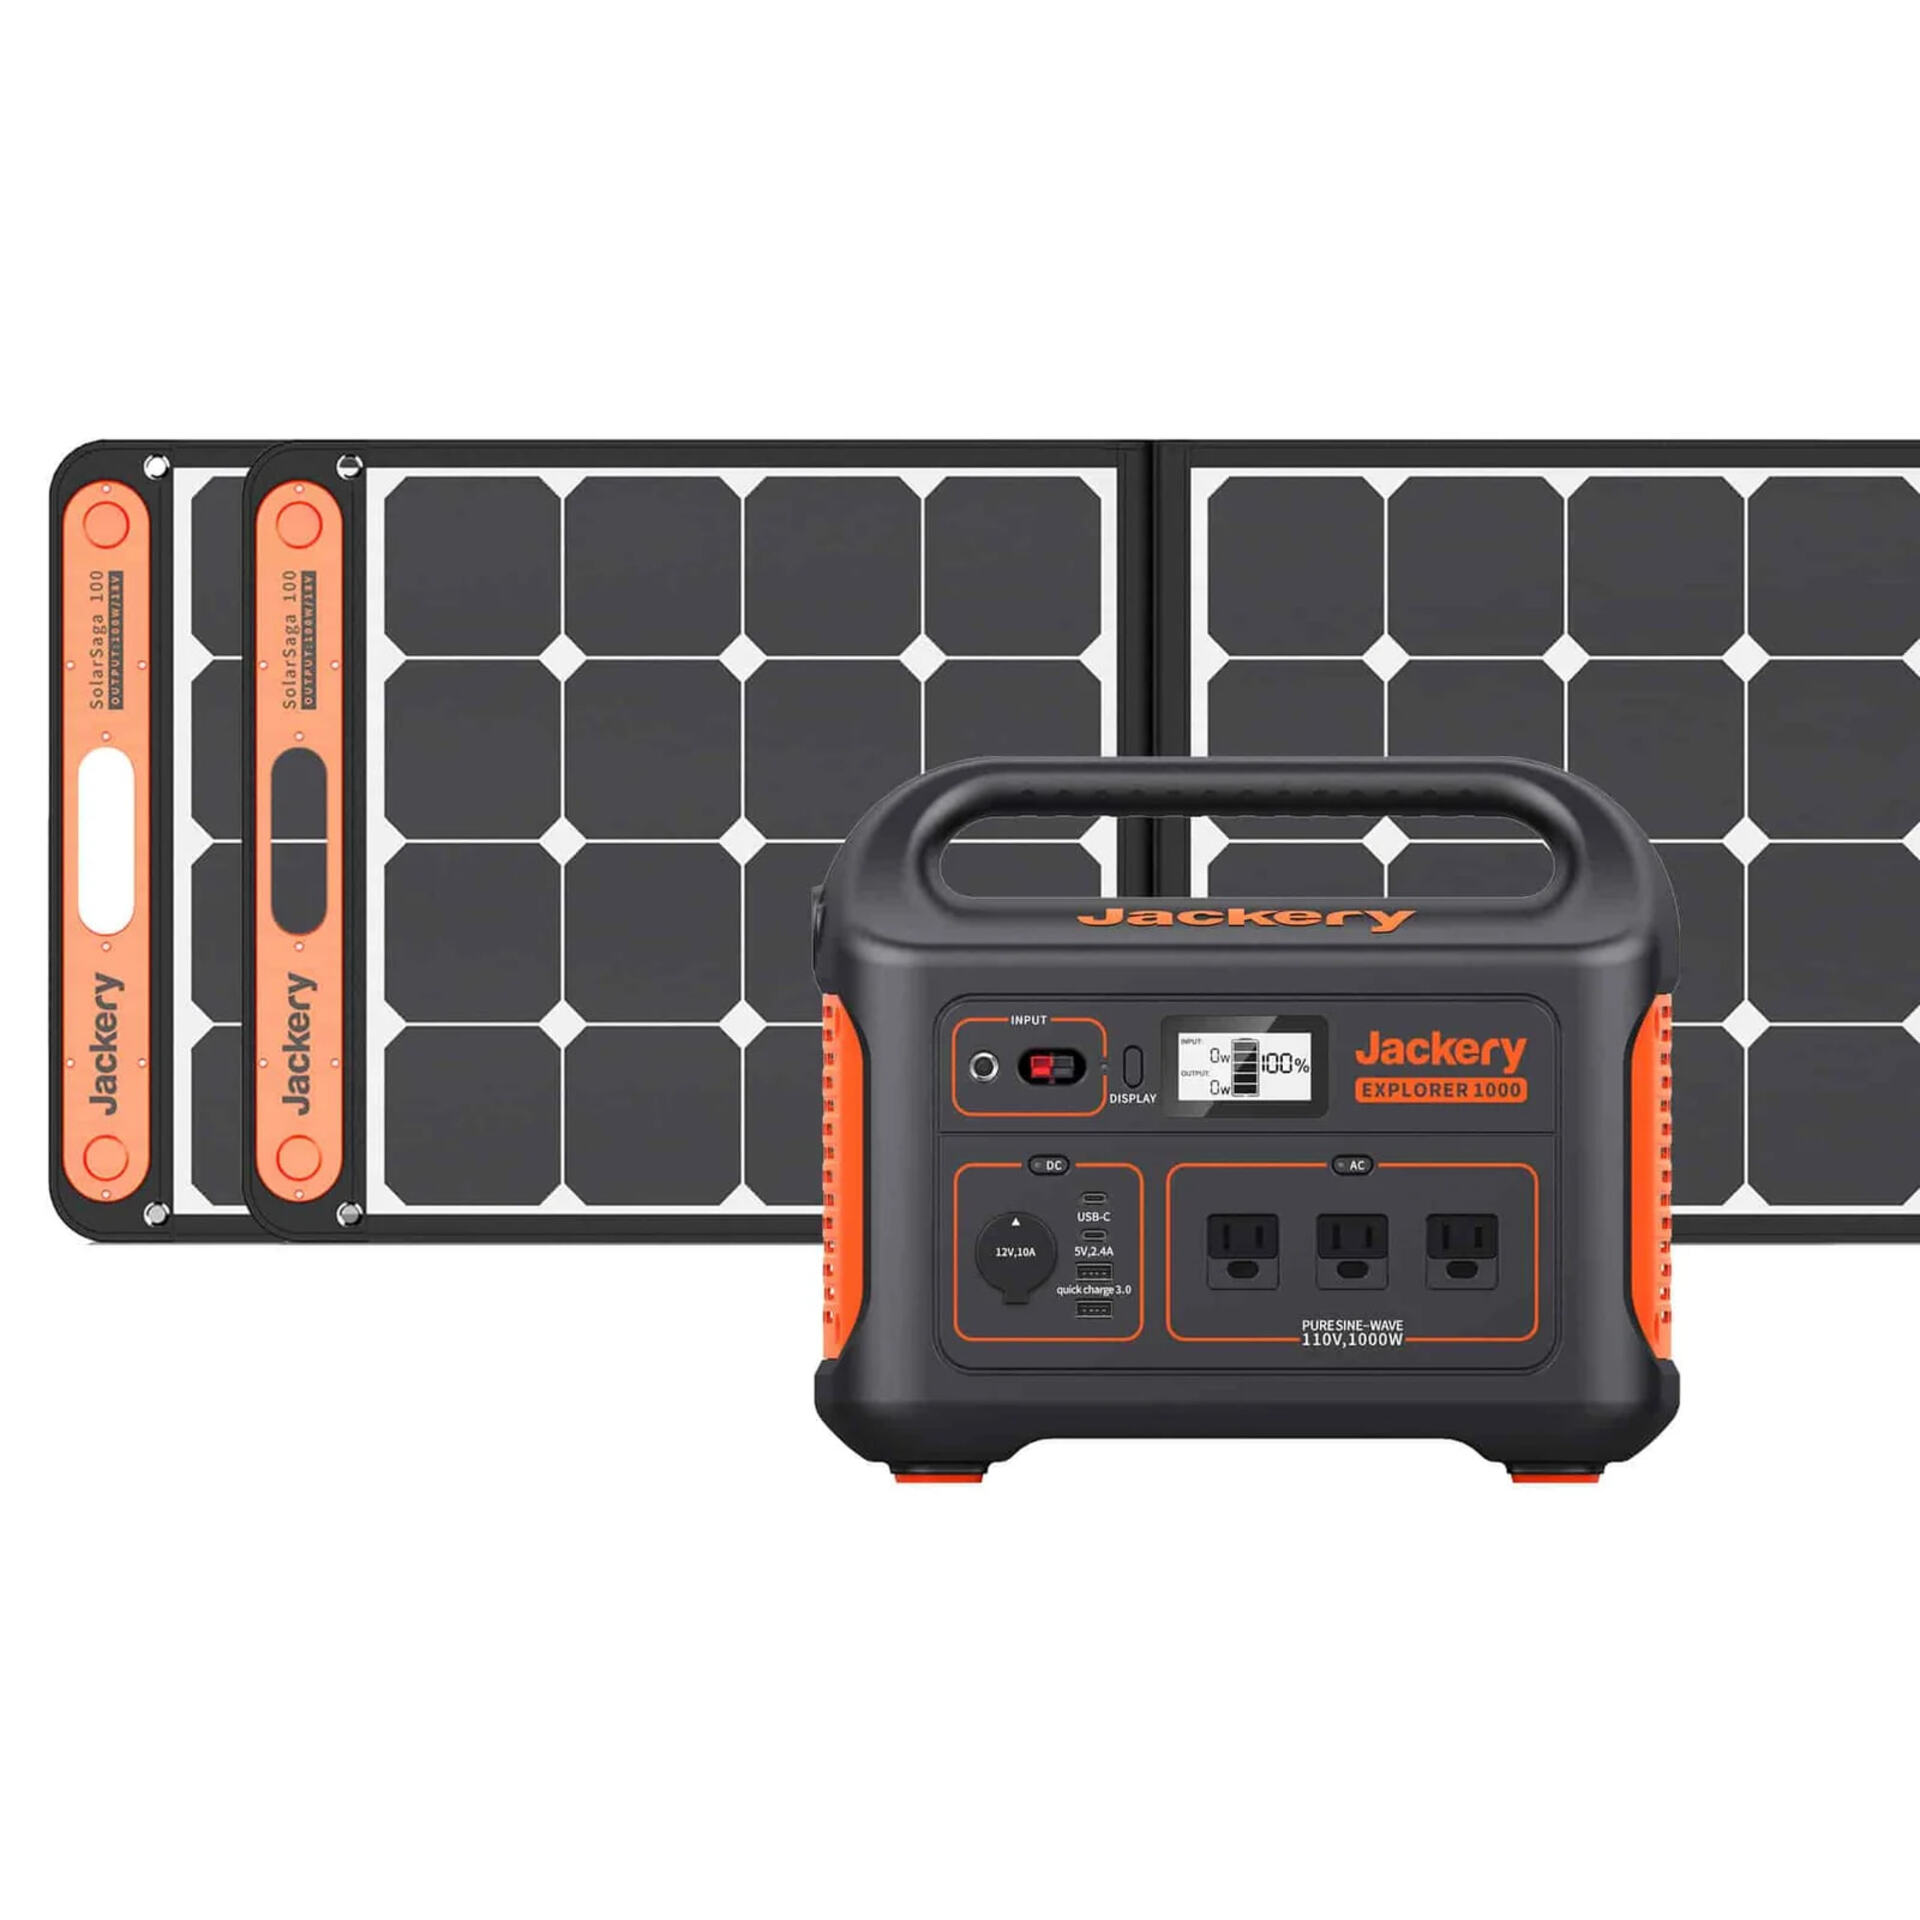 Jackery Solar Generator 1000, 2xSolarSaga 100W Solar Panel